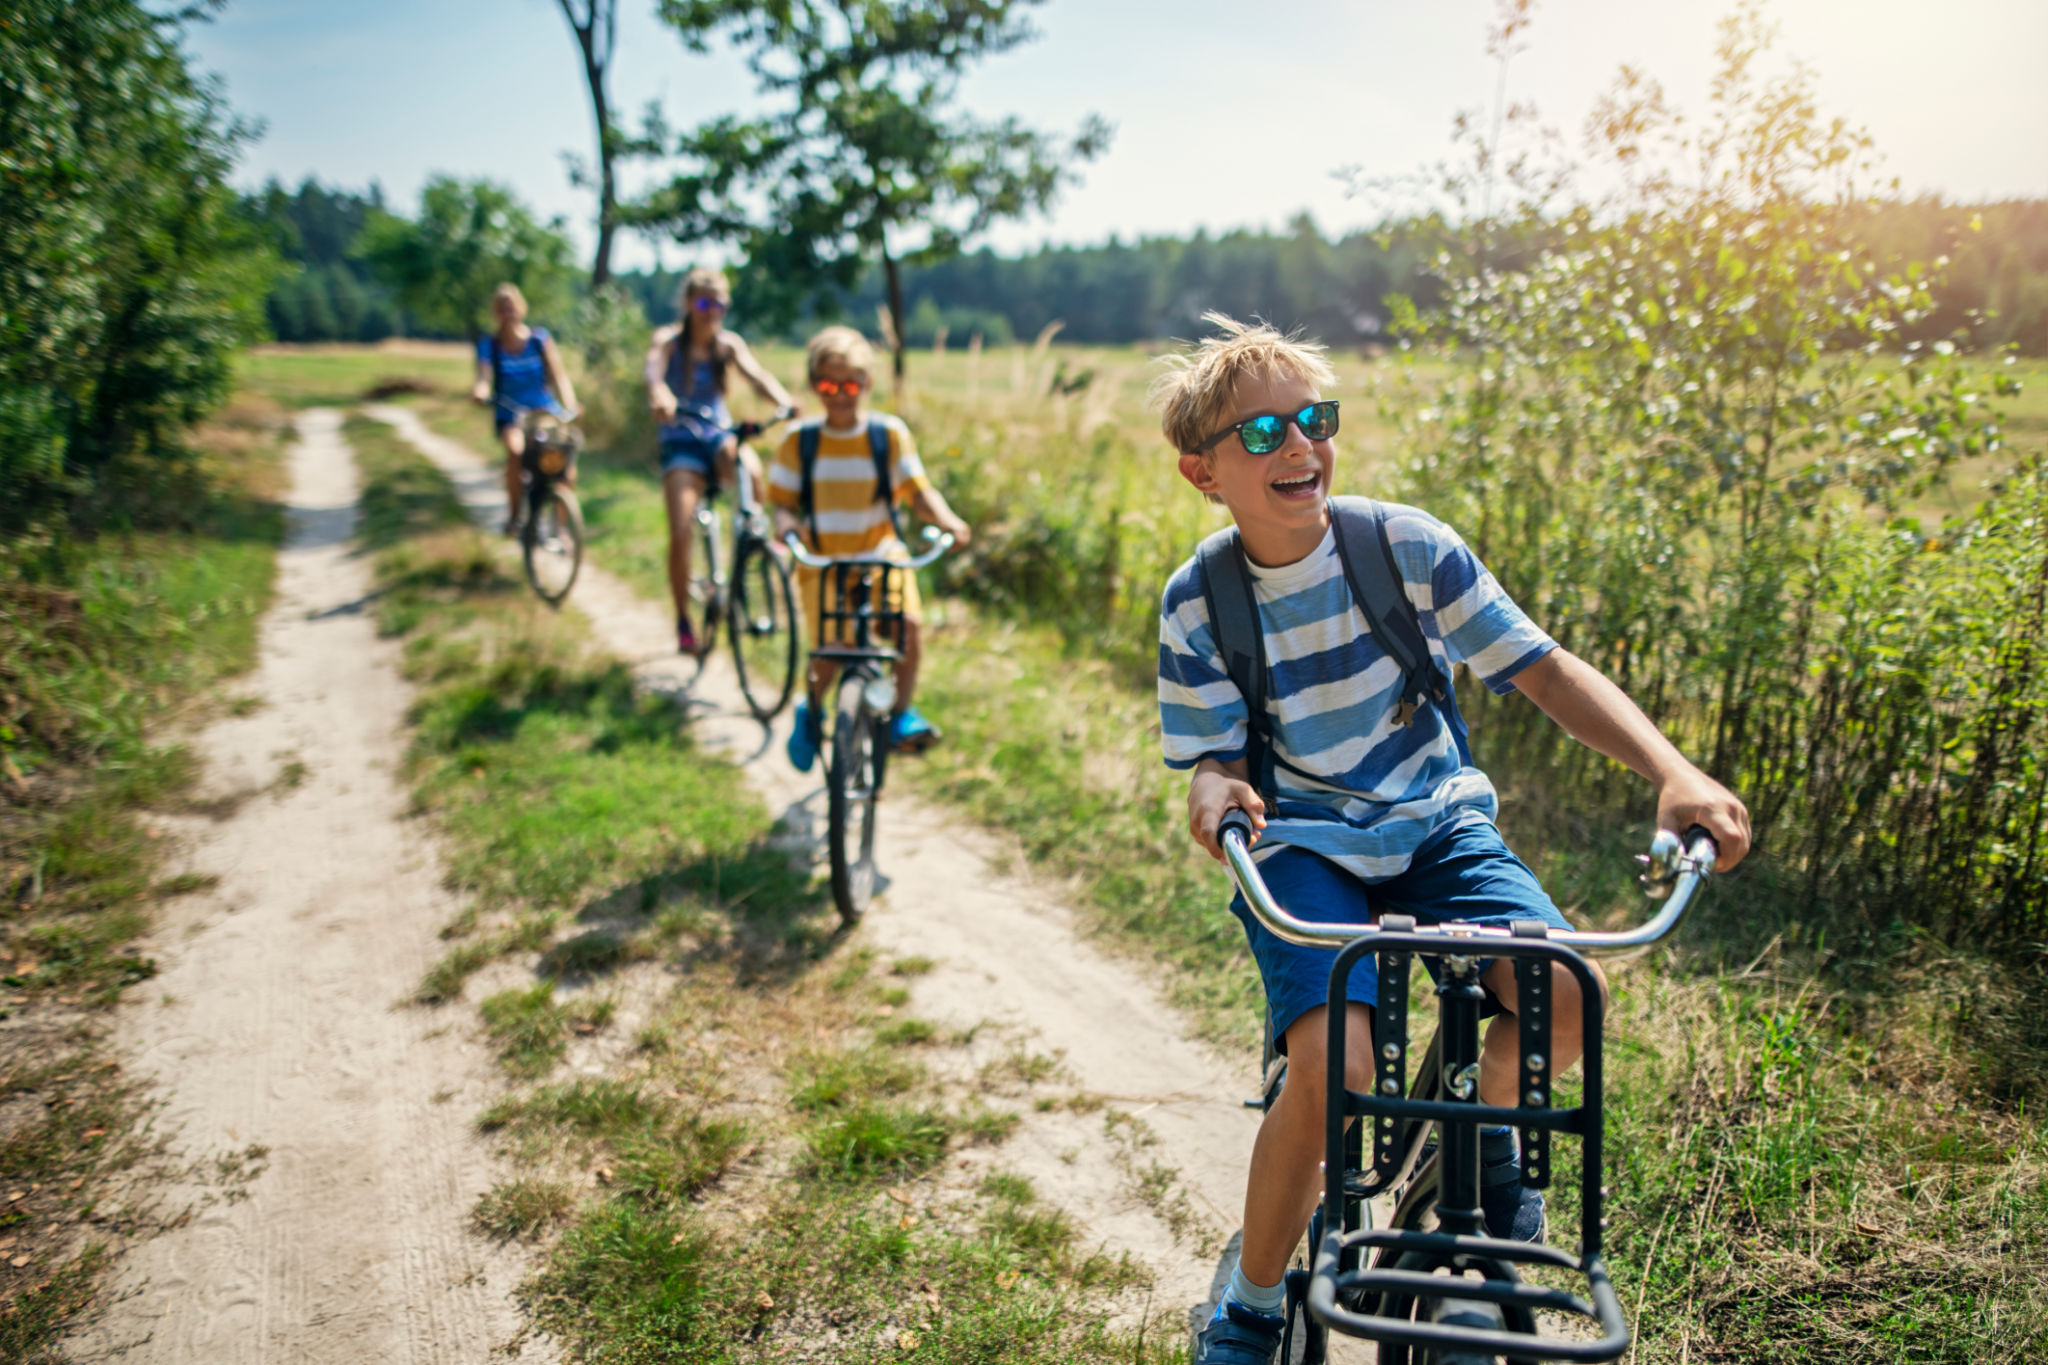 Dicas para viajar com as crianças de forma segura | Crianças andando de bicicleta | Conexão123